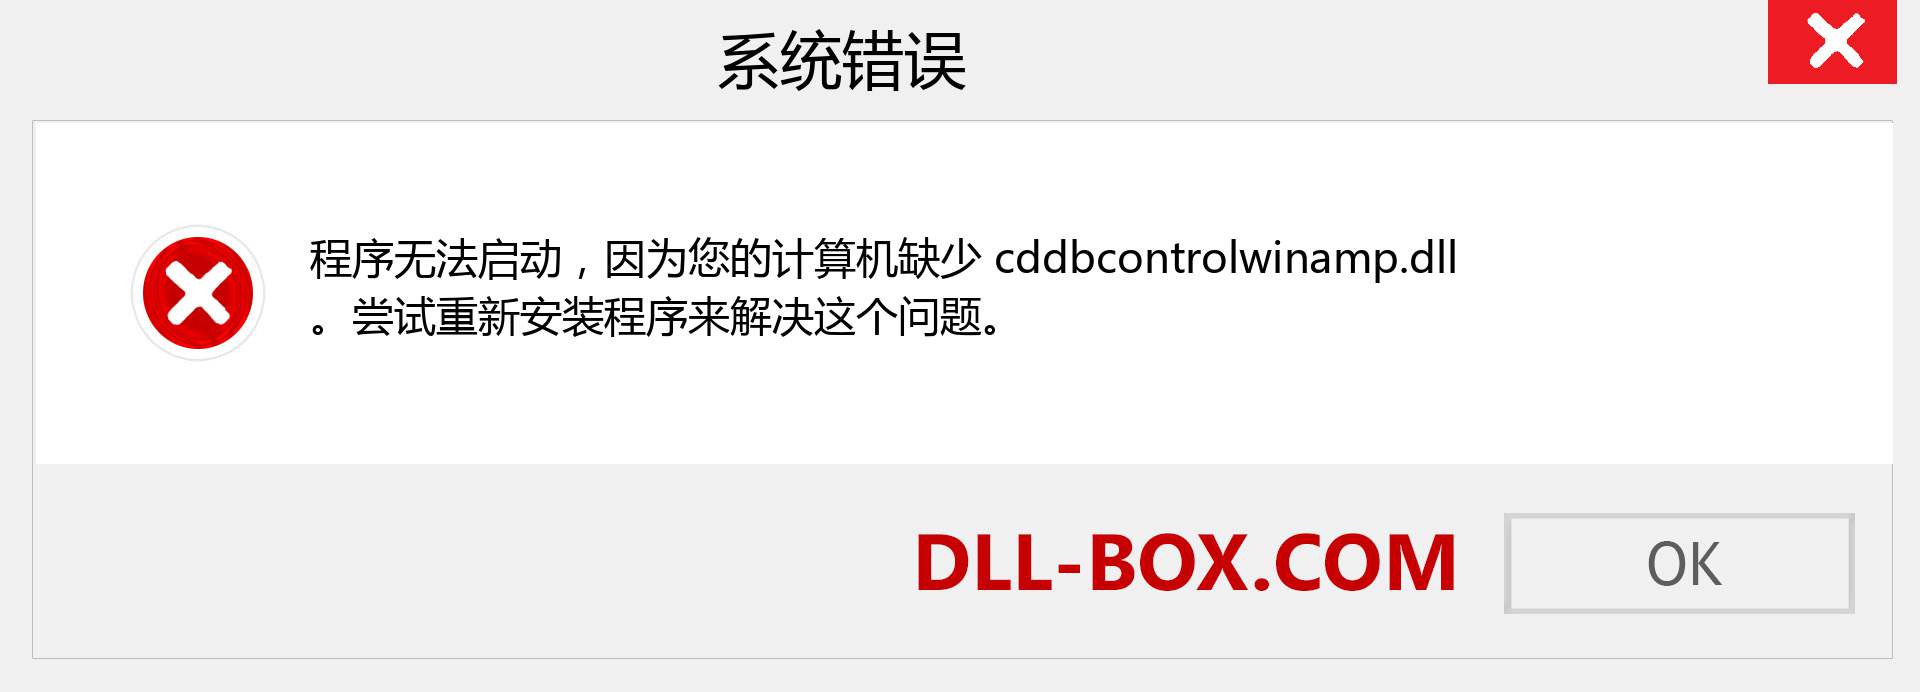 cddbcontrolwinamp.dll 文件丢失？。 适用于 Windows 7、8、10 的下载 - 修复 Windows、照片、图像上的 cddbcontrolwinamp dll 丢失错误